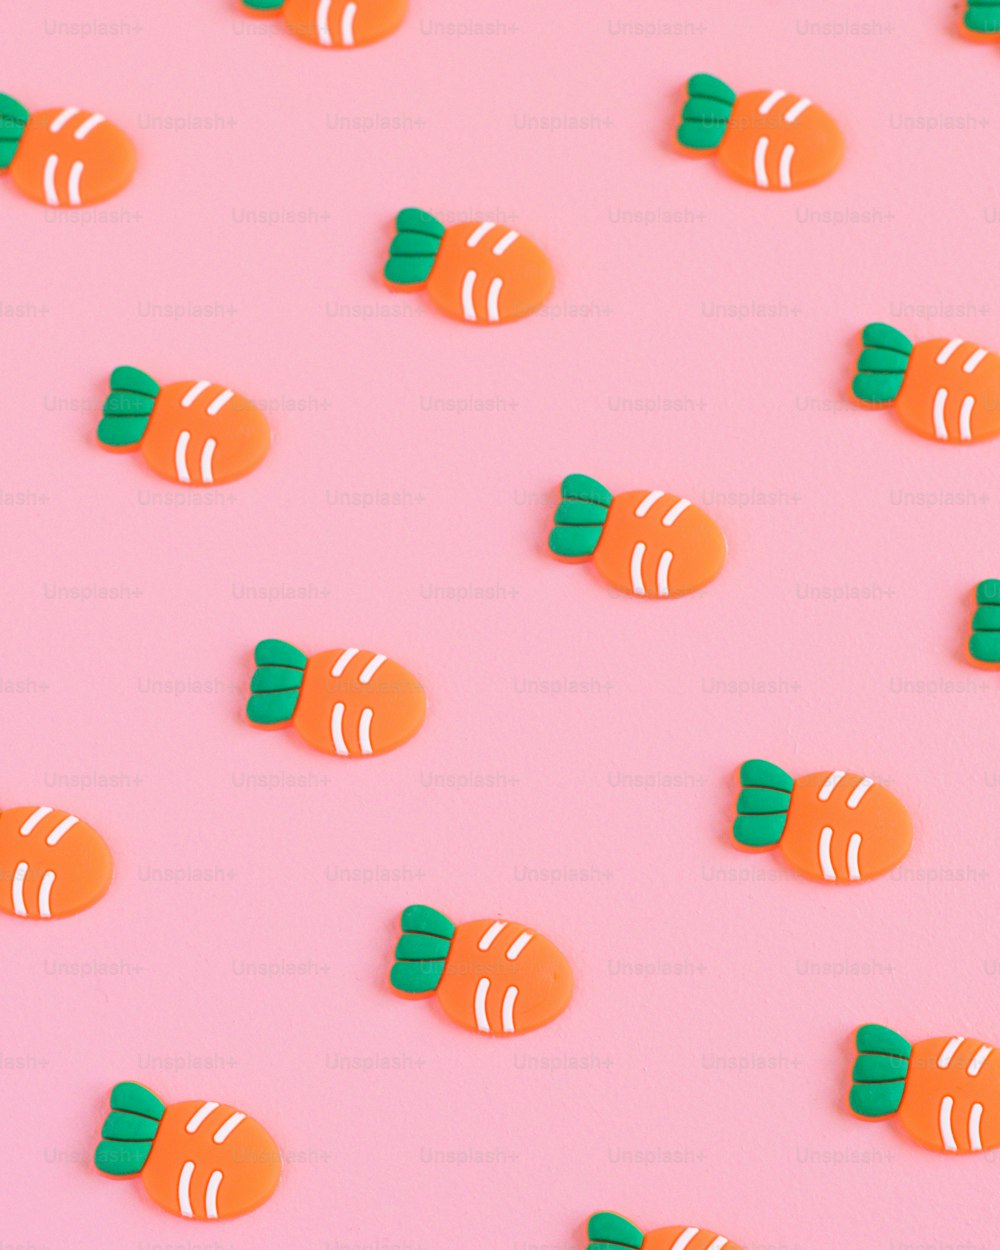 Un gruppo di caramelle caramelle arancioni e verdi su uno sfondo rosa